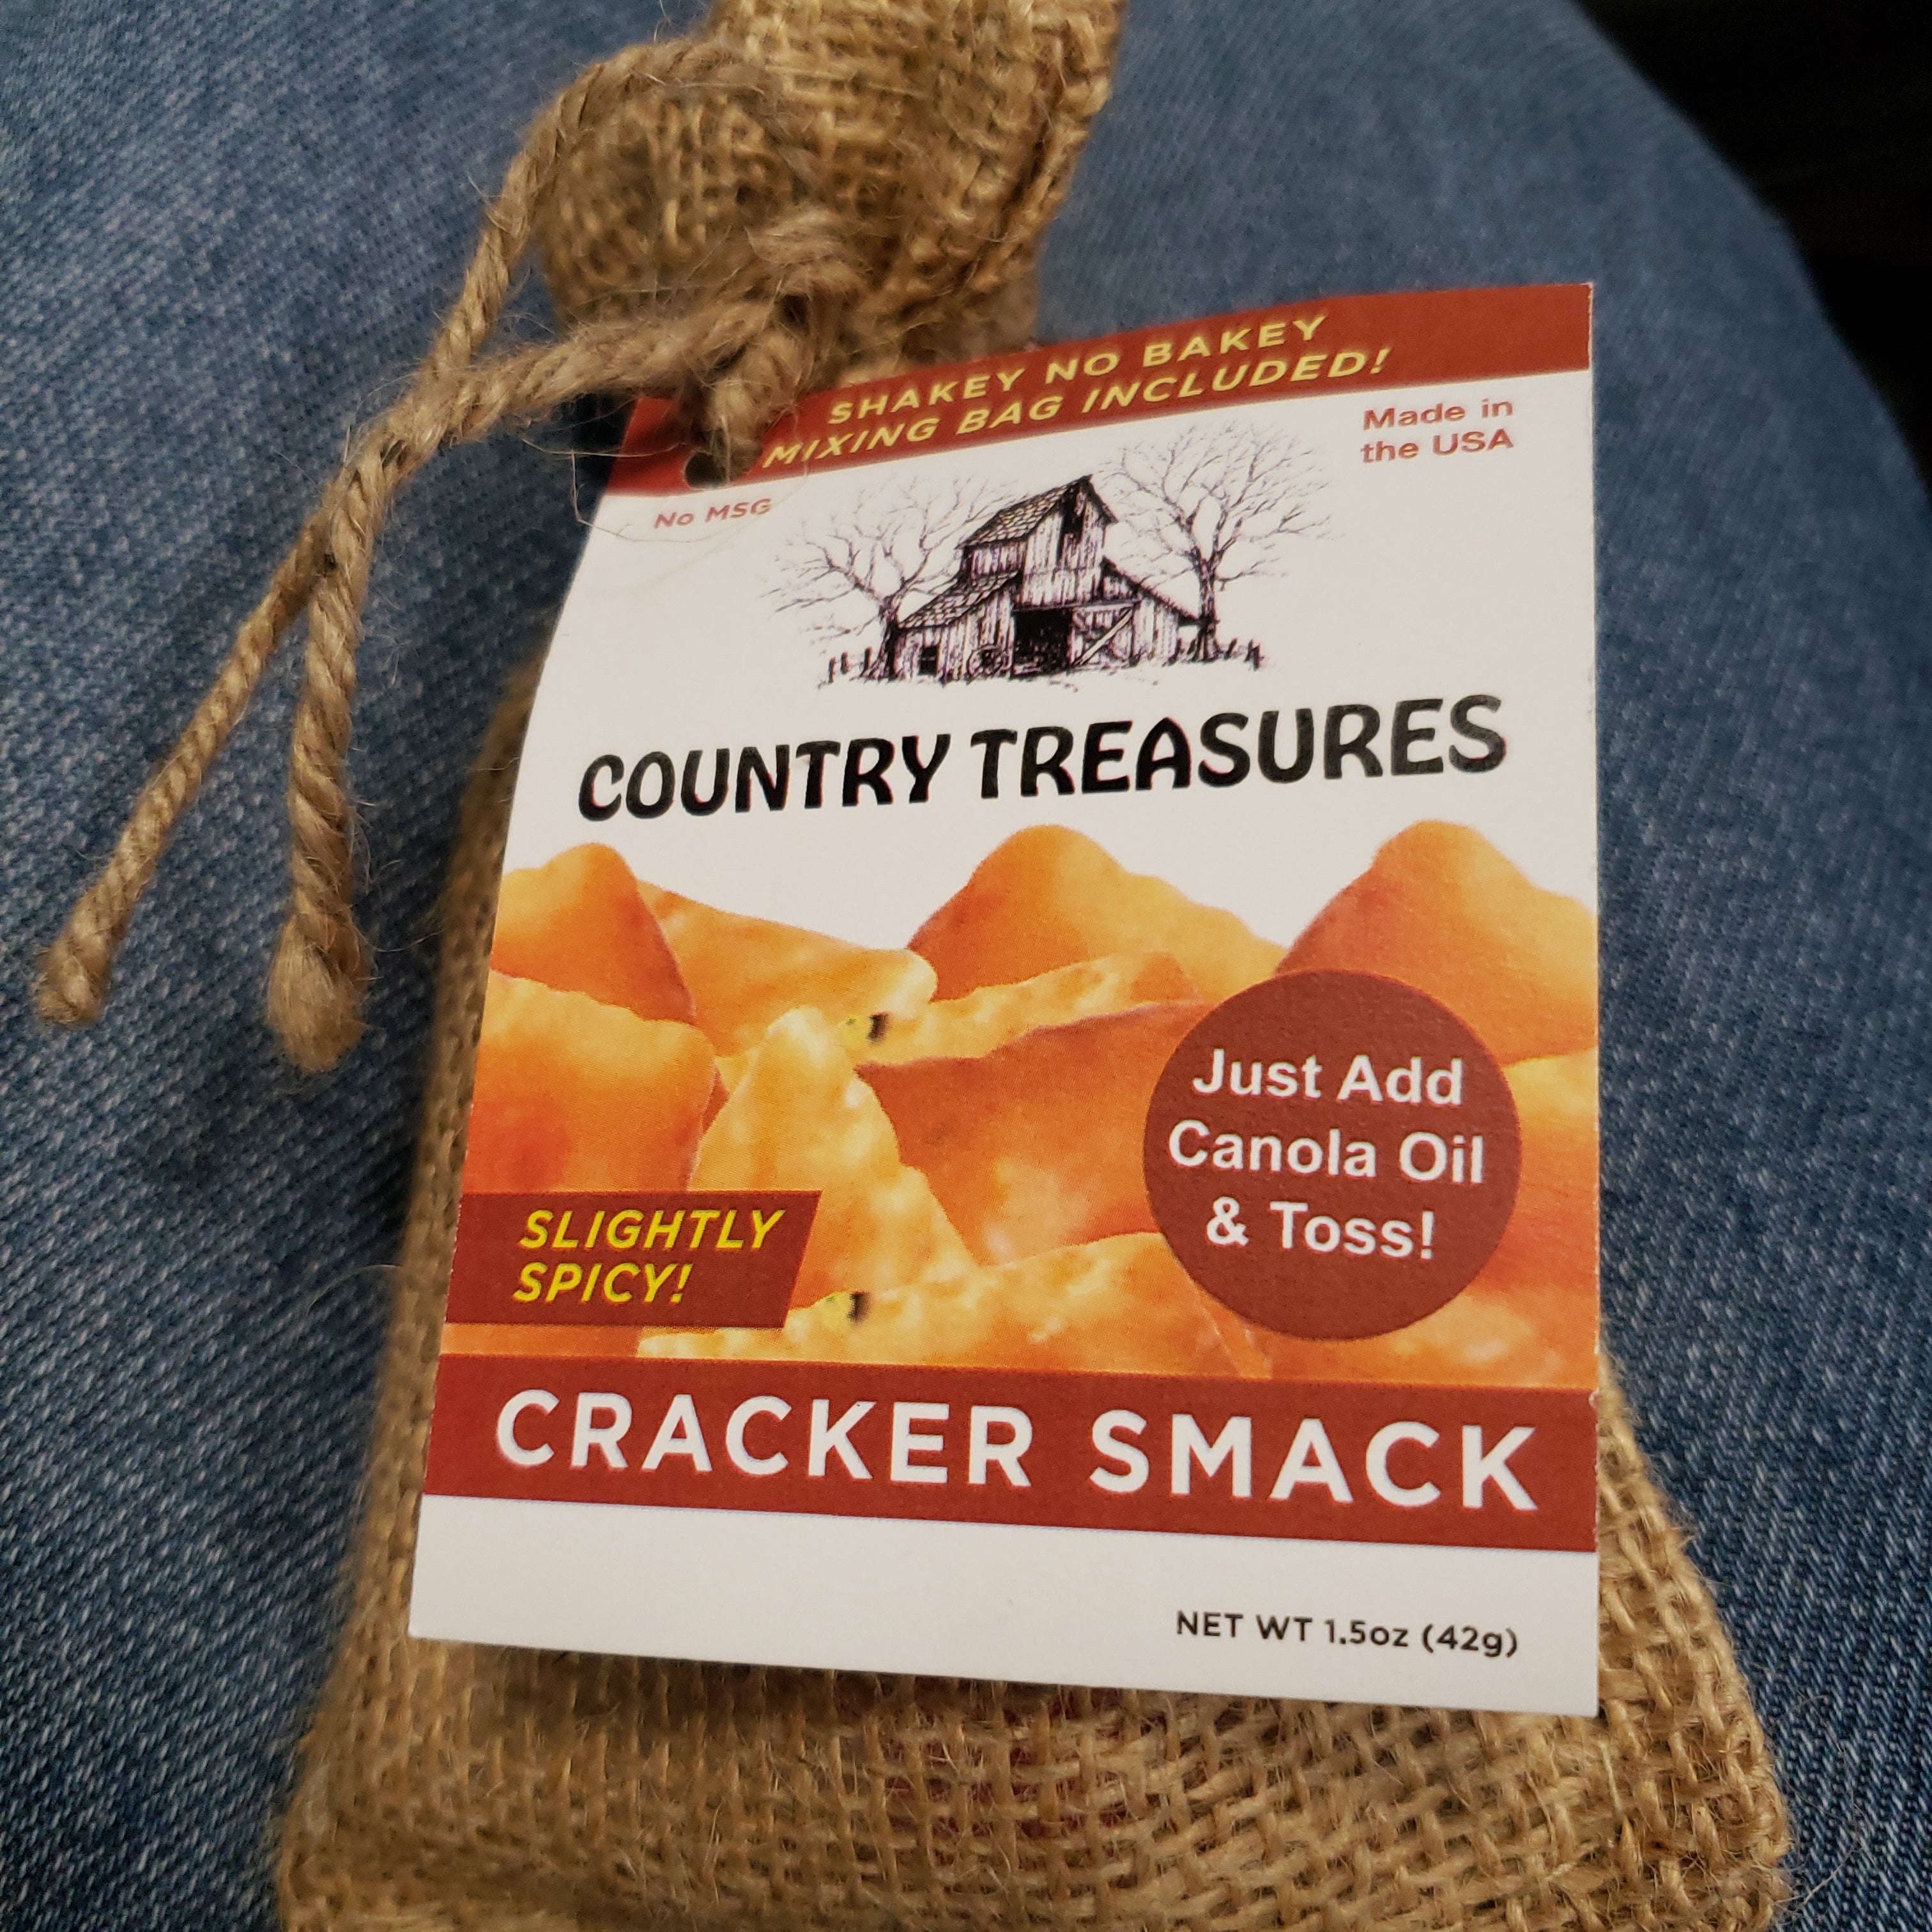 Cracker smack slightly spicy